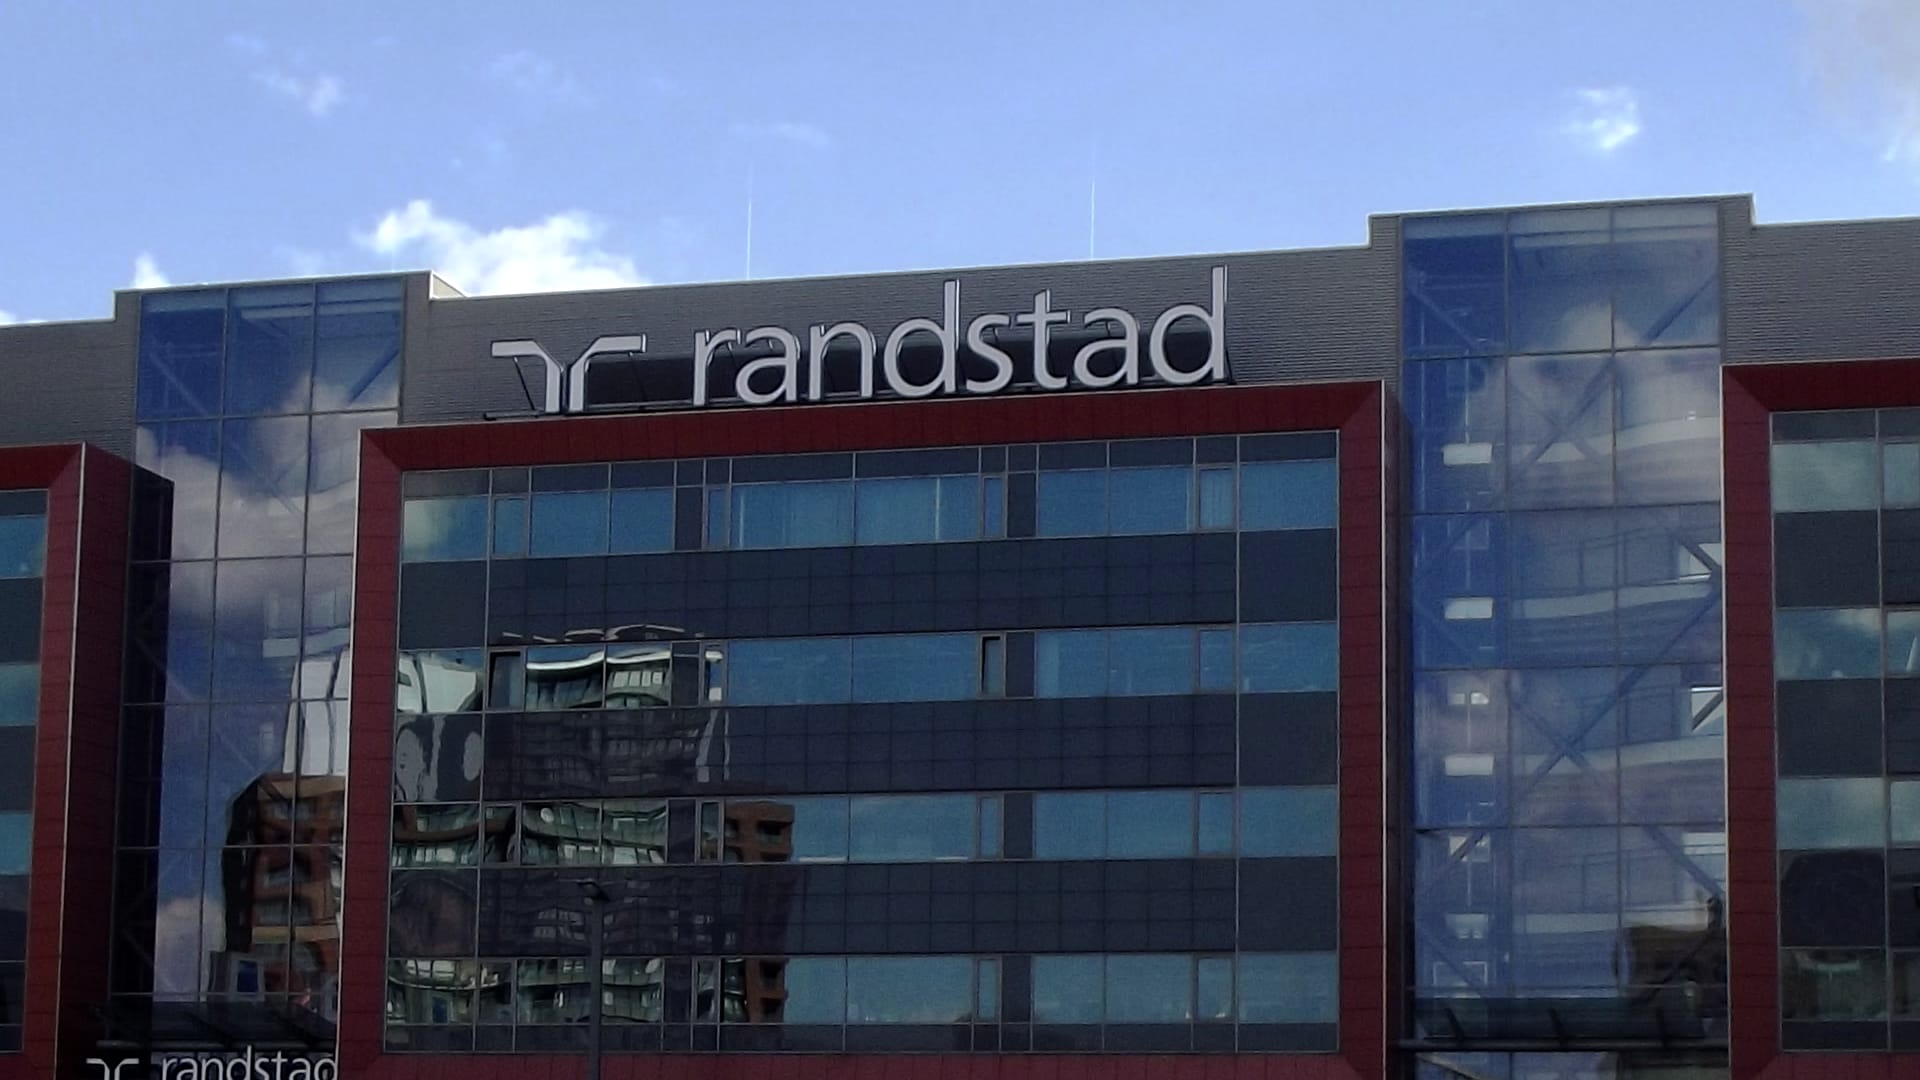 Caso práctico de Randstad